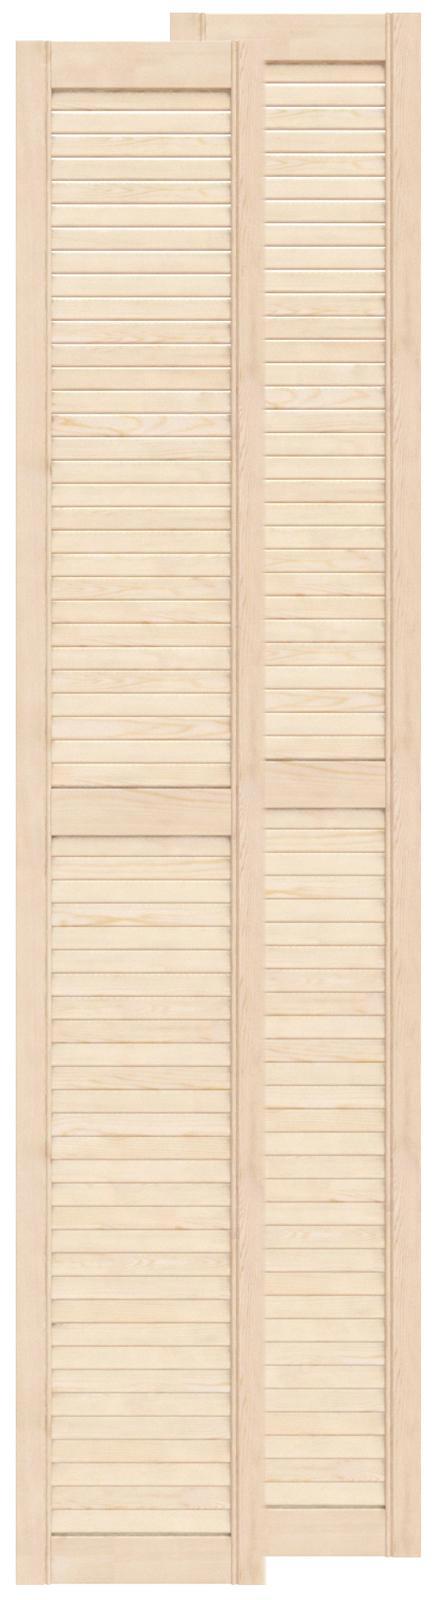 Двери жалюзийные деревянные Timber&Style 1805х294х20мм сосна Экстра .